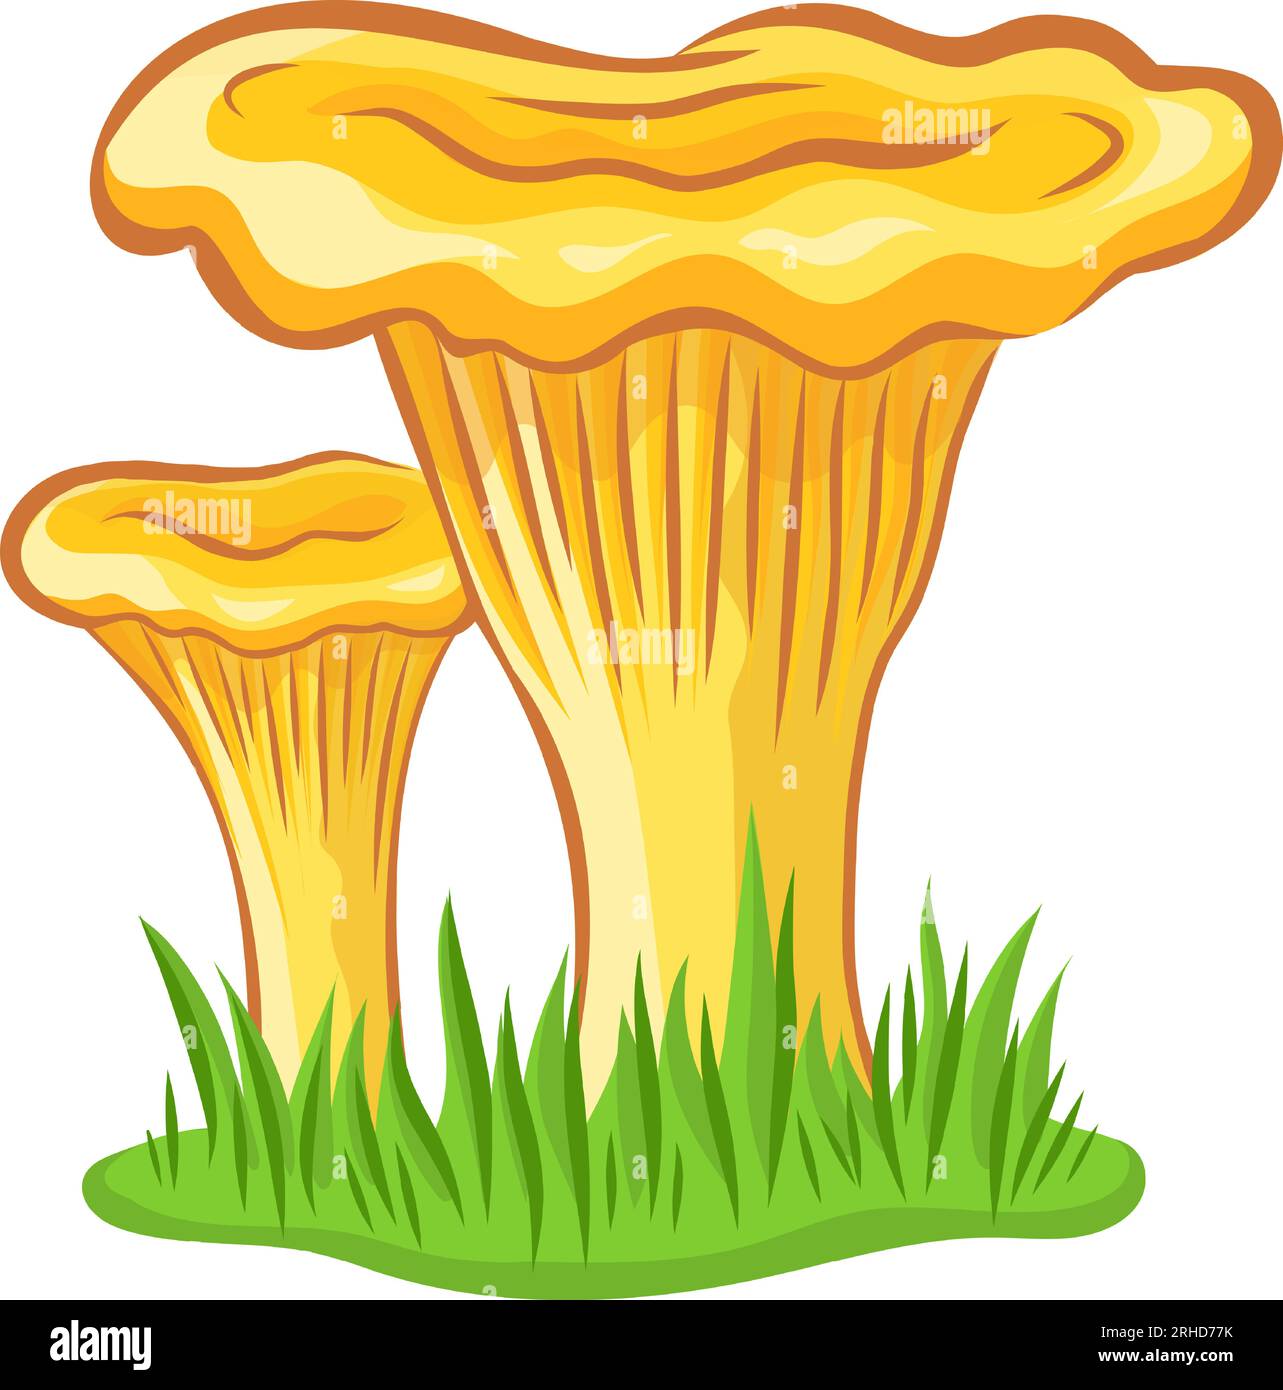 Image vectorielle de champignon chanterelle sans fond Illustration de Vecteur